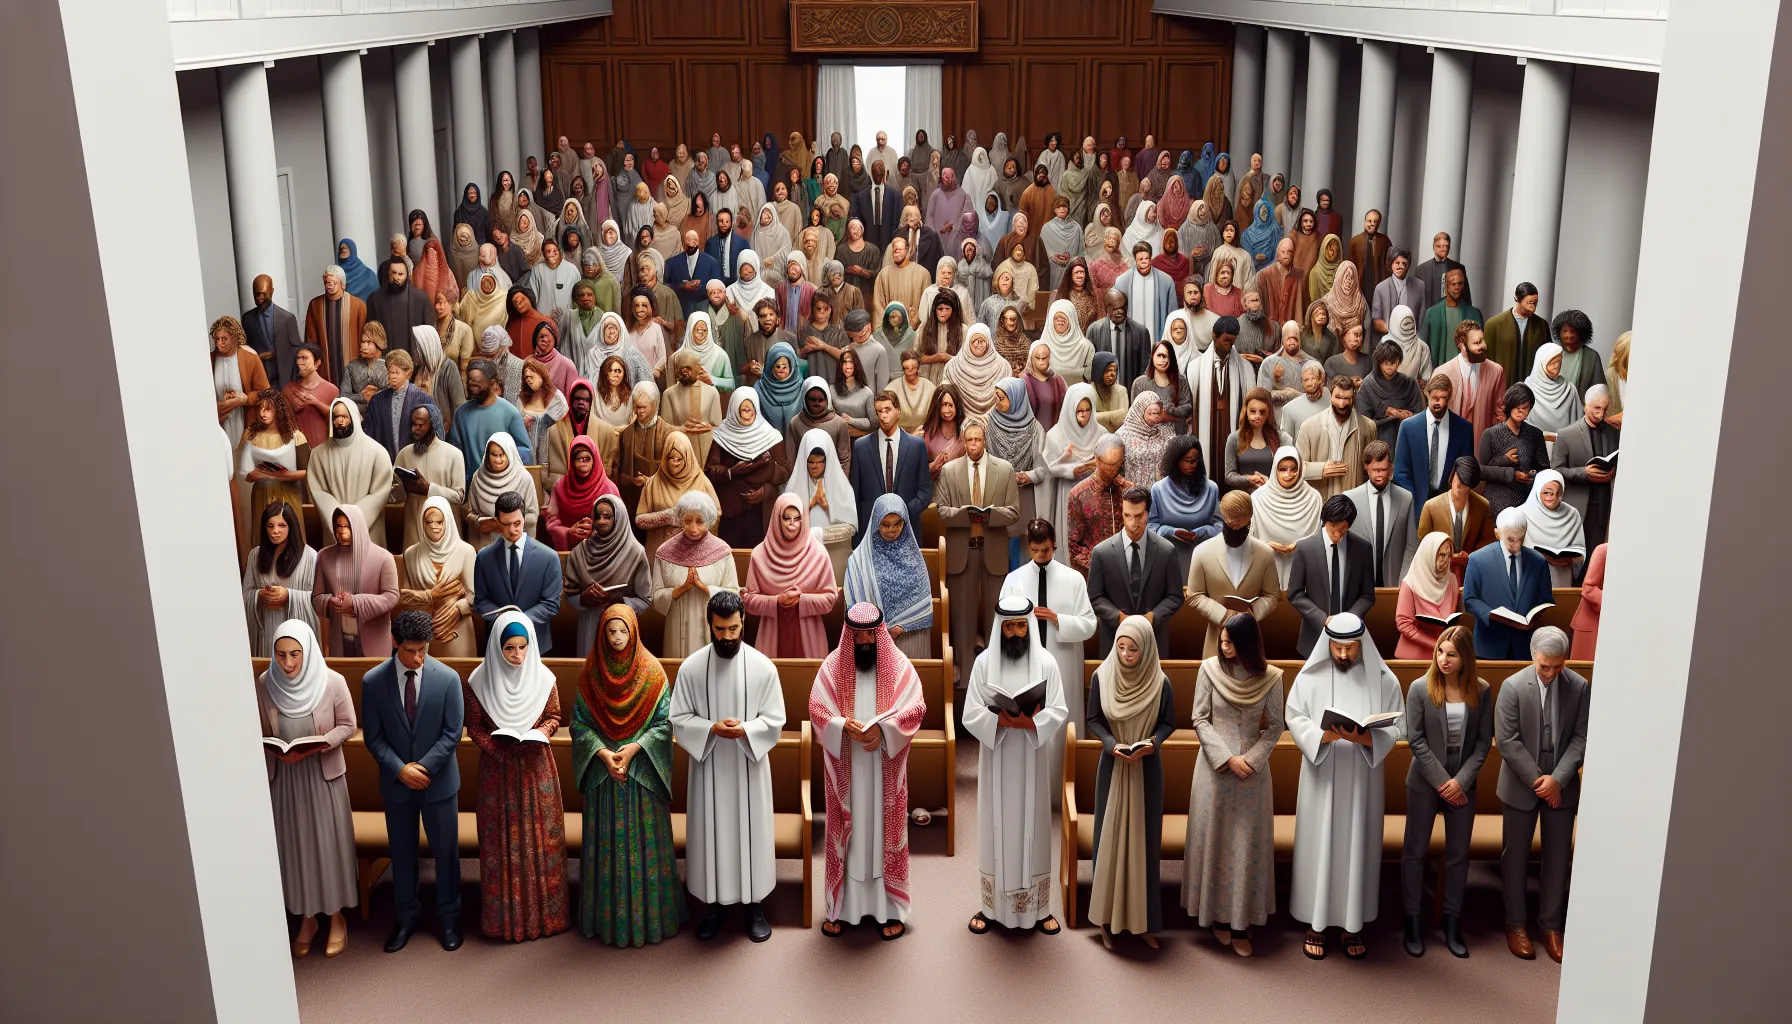 Imagen de una iglesia con personas vestidas con atuendos variados